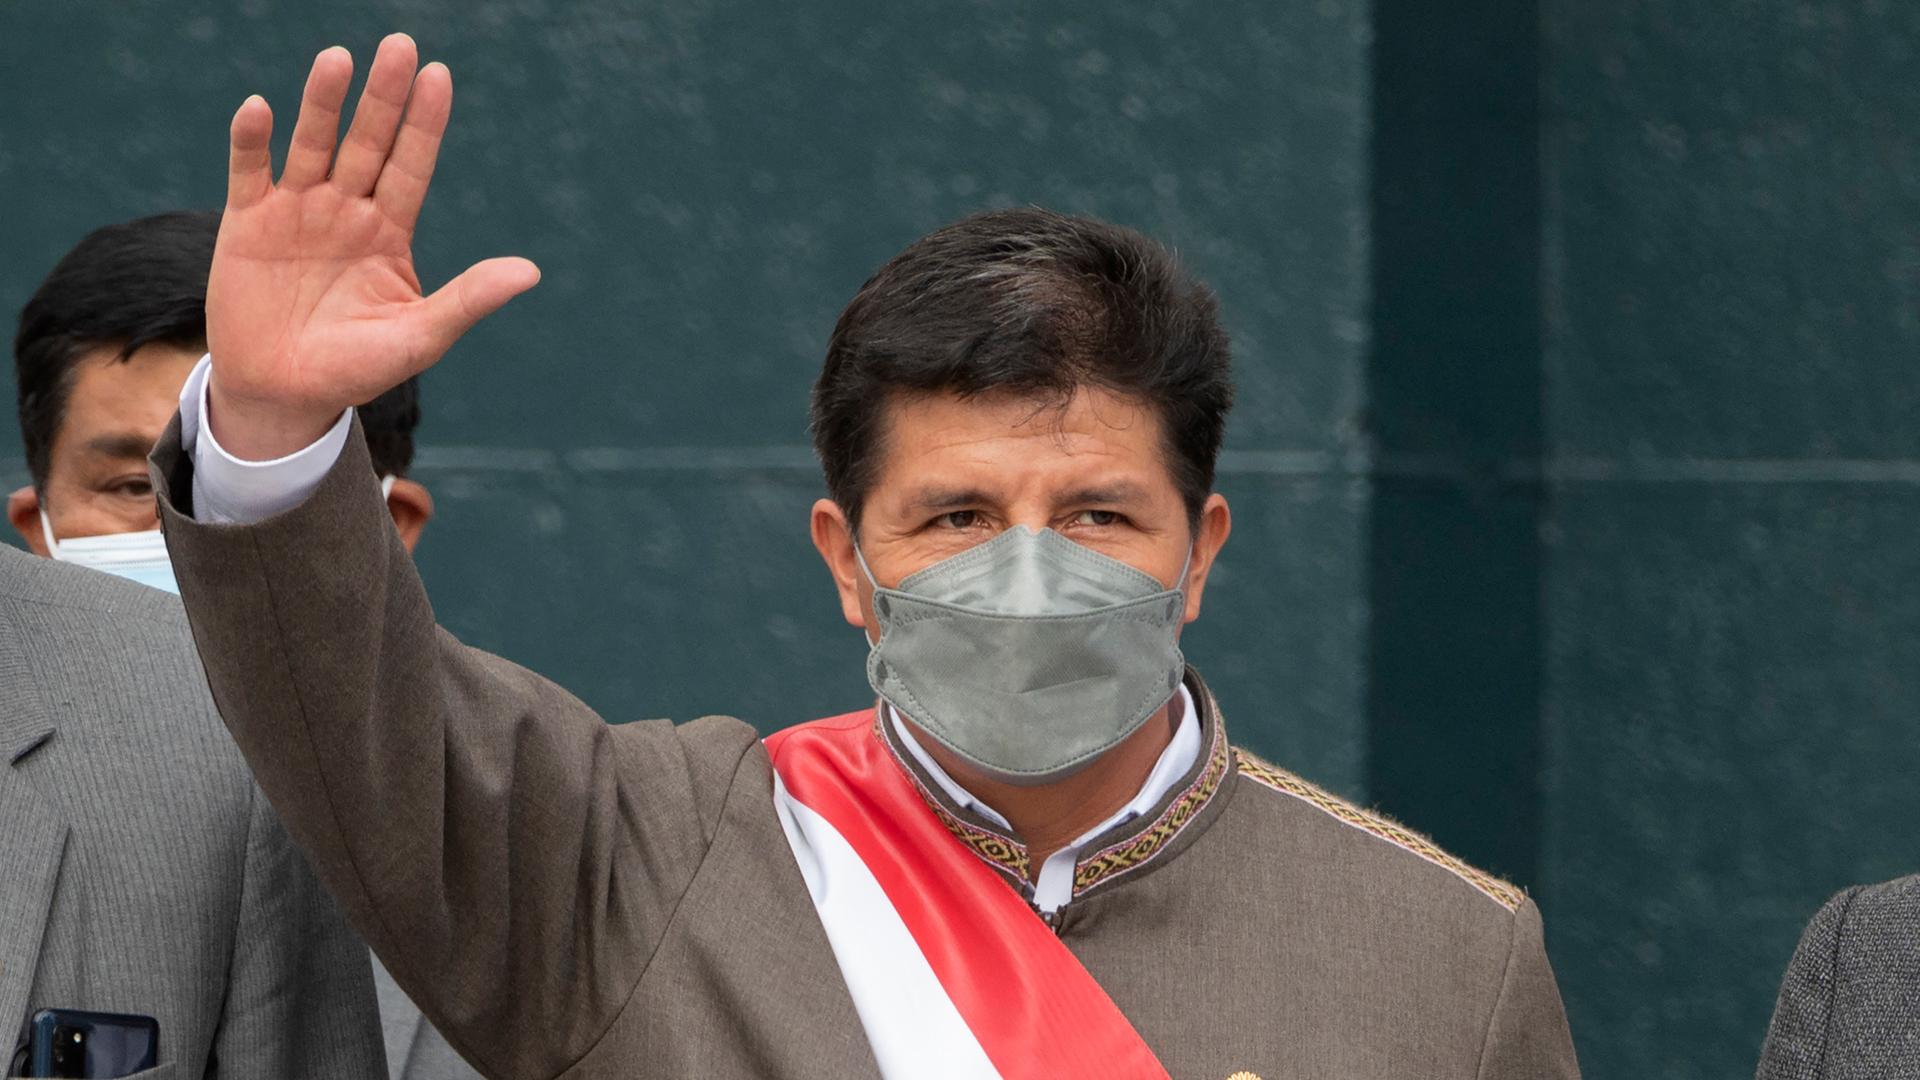 Südamerika - Machtkampf in Peru: Abgesetzter Präsident Castillo festgenommen - bisherige Vizepräsidentin vereidigt